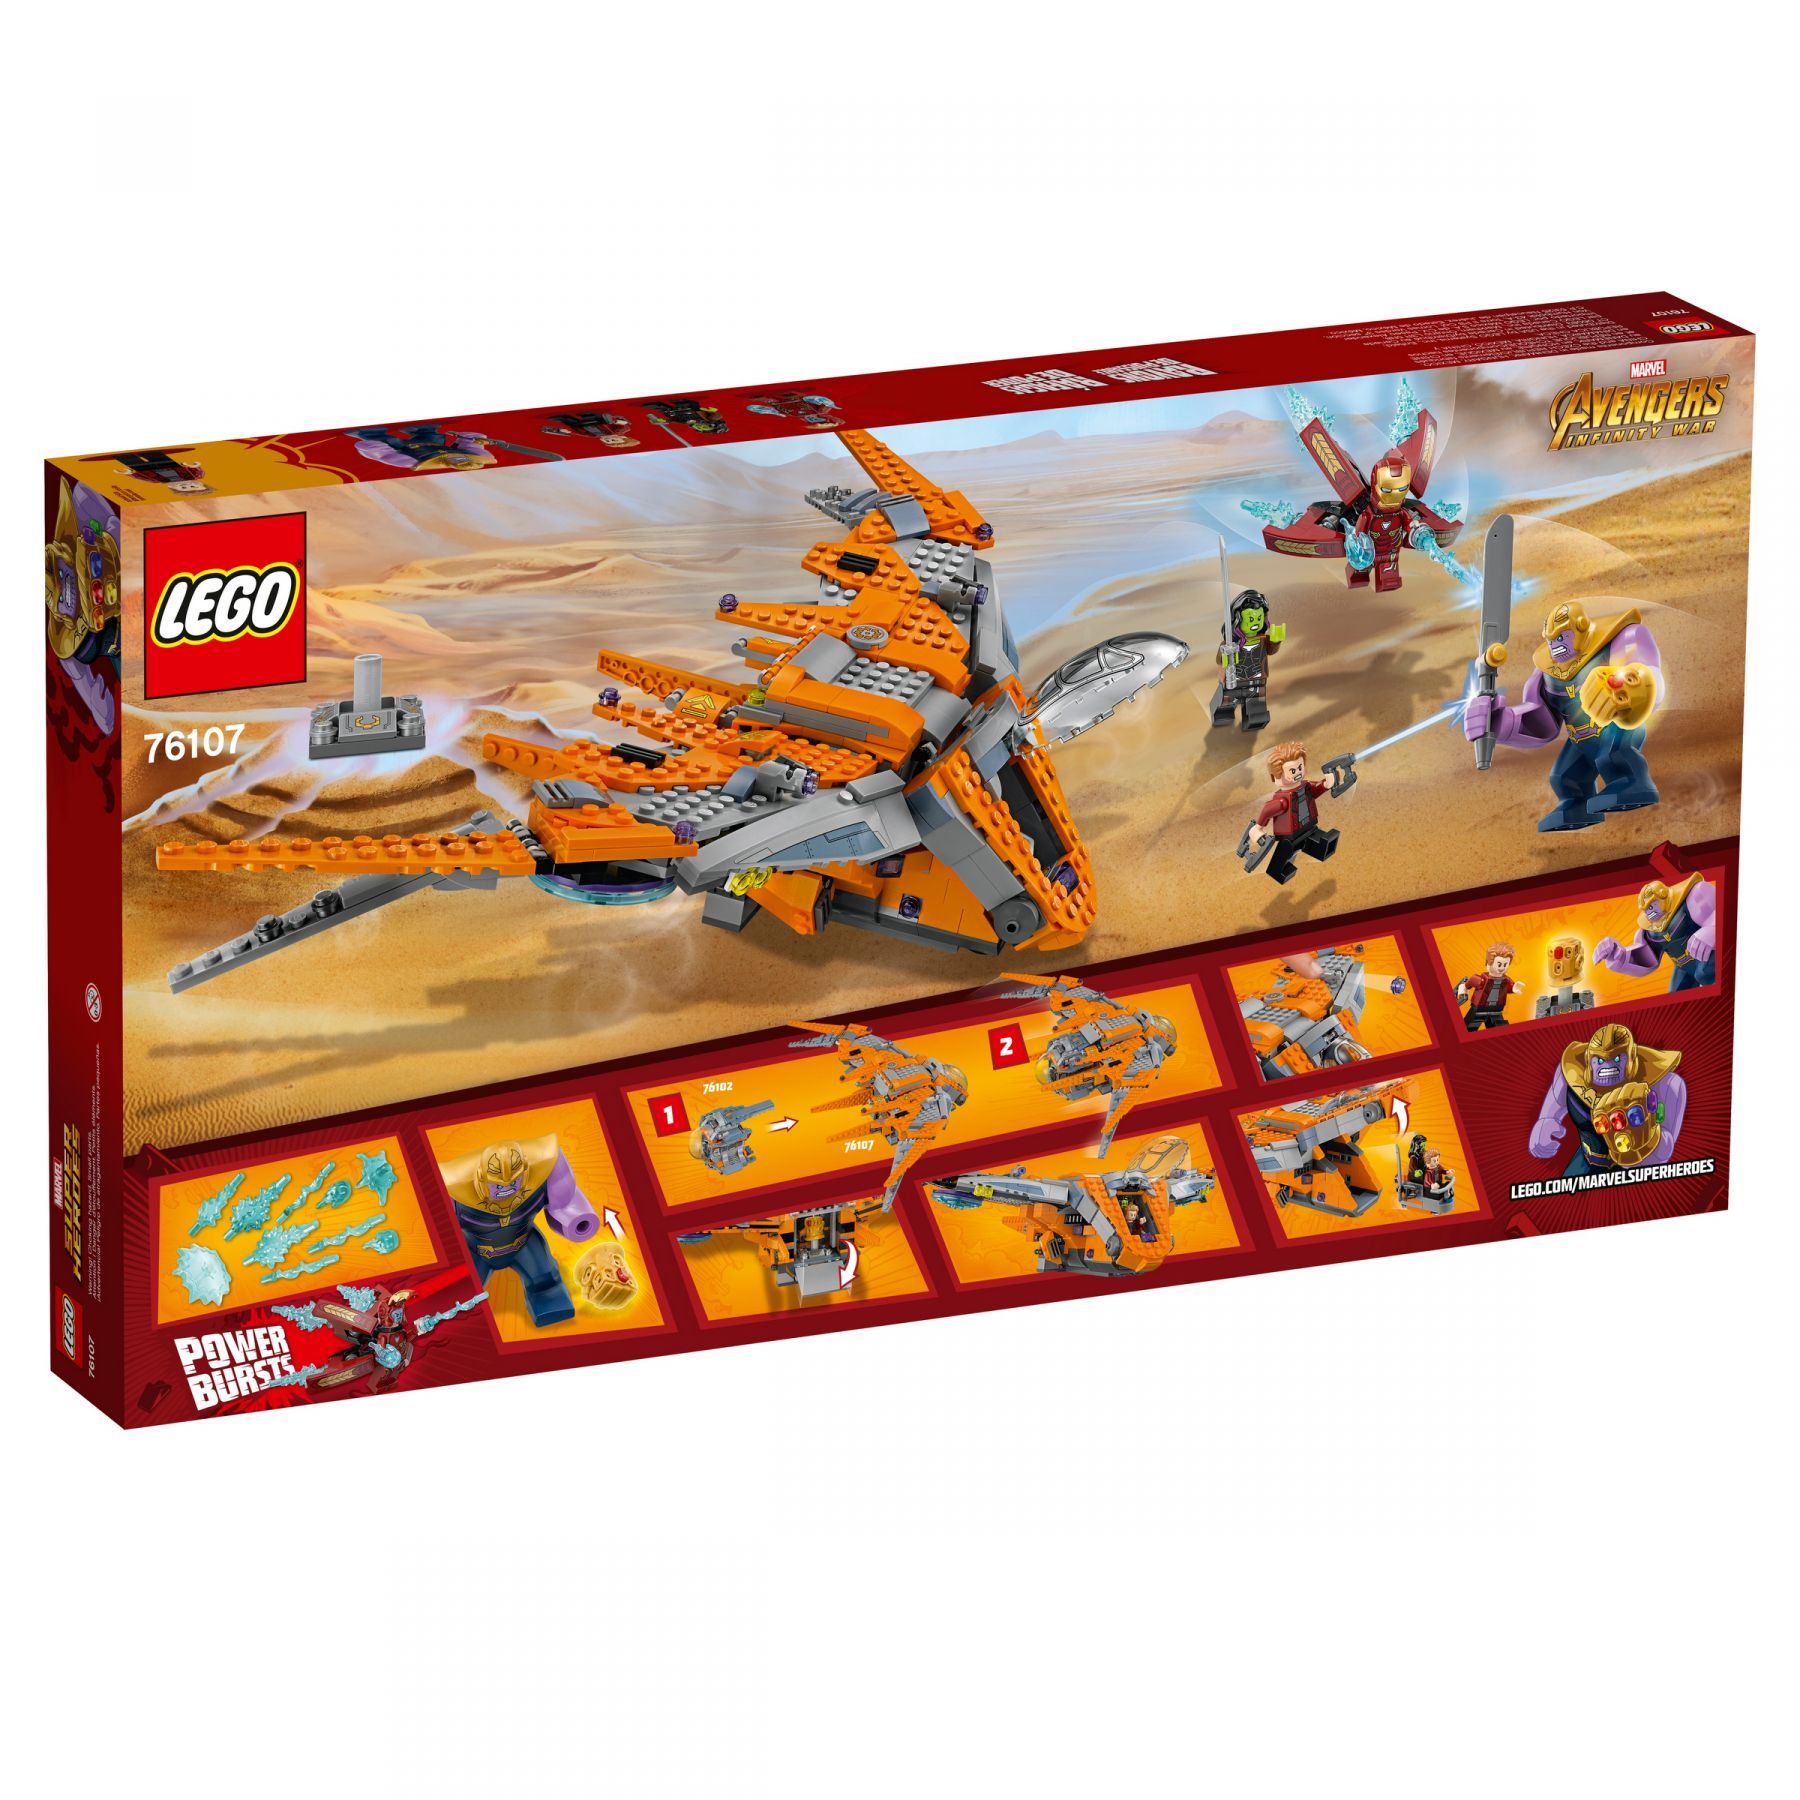 76107 LEGO Das ultimative Gefecht Thanos Bausatz